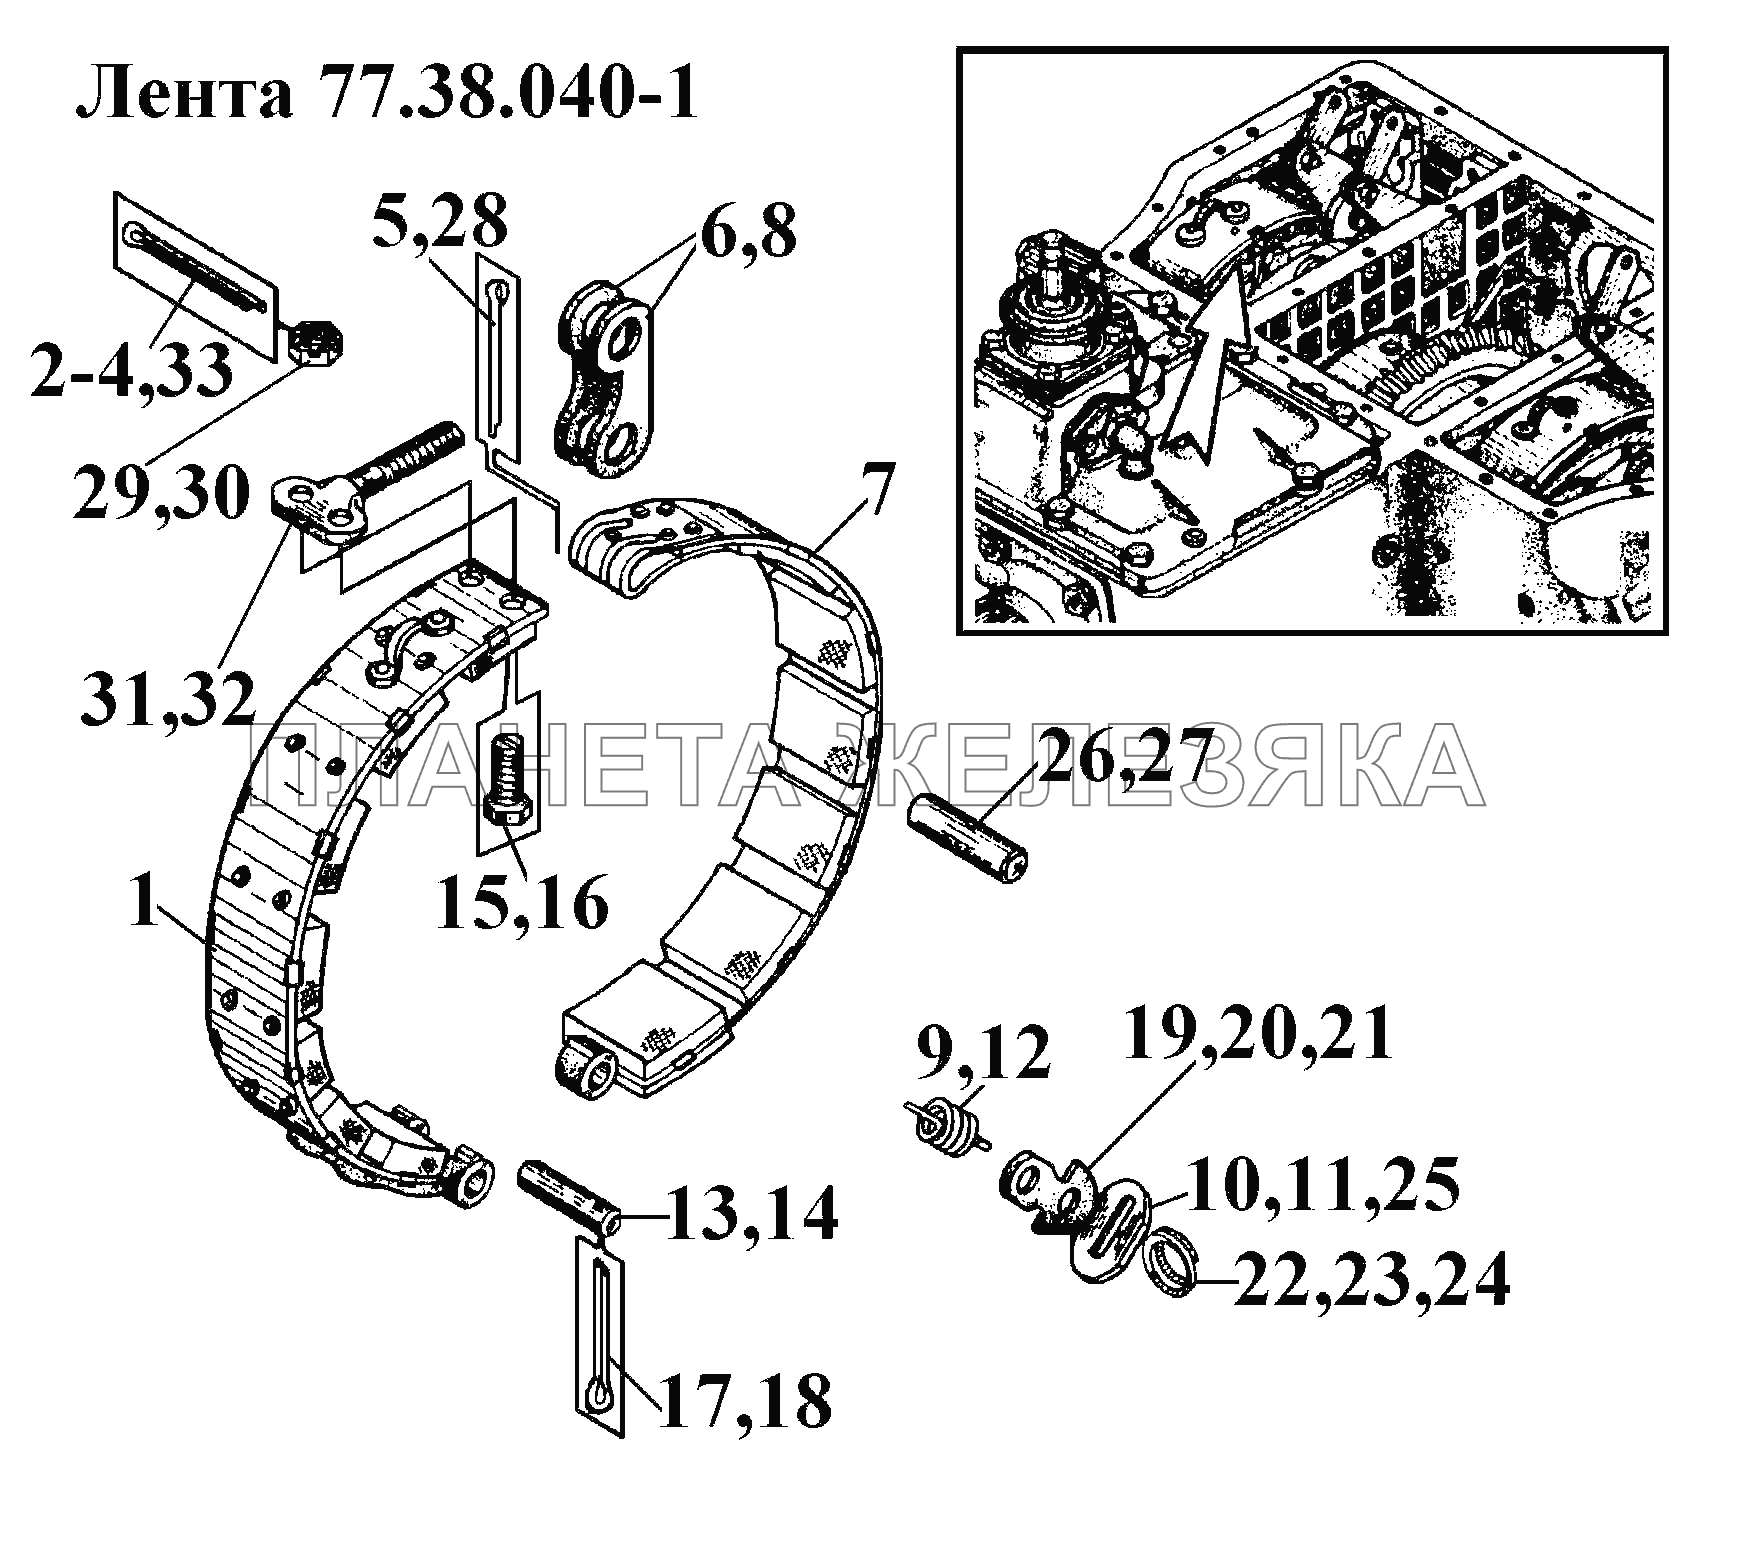 Лента 77.38.040-1 ВТ-100Д